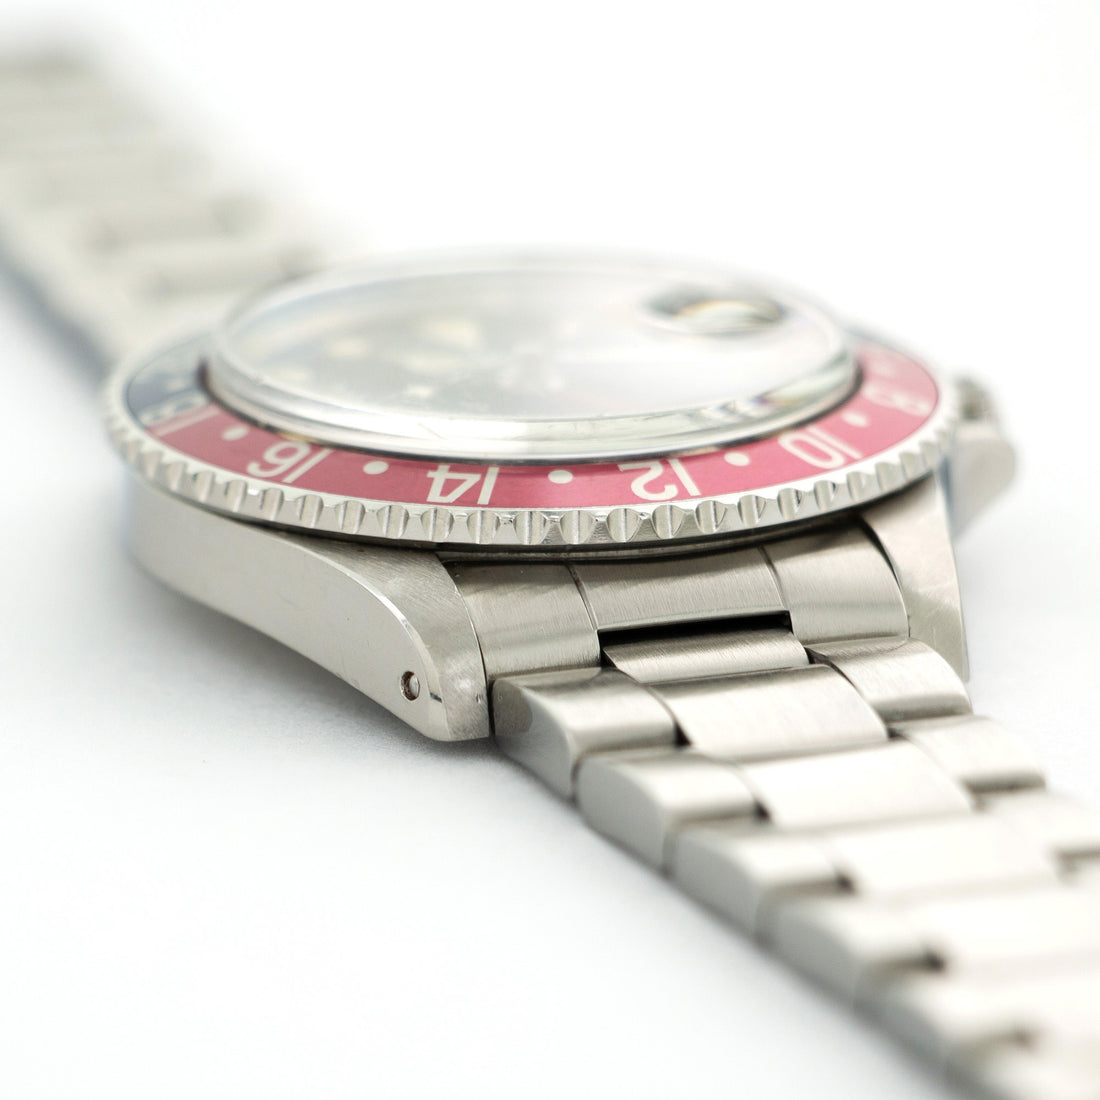 Rolex Pepsi GMT-Master Watch Ref. 1675